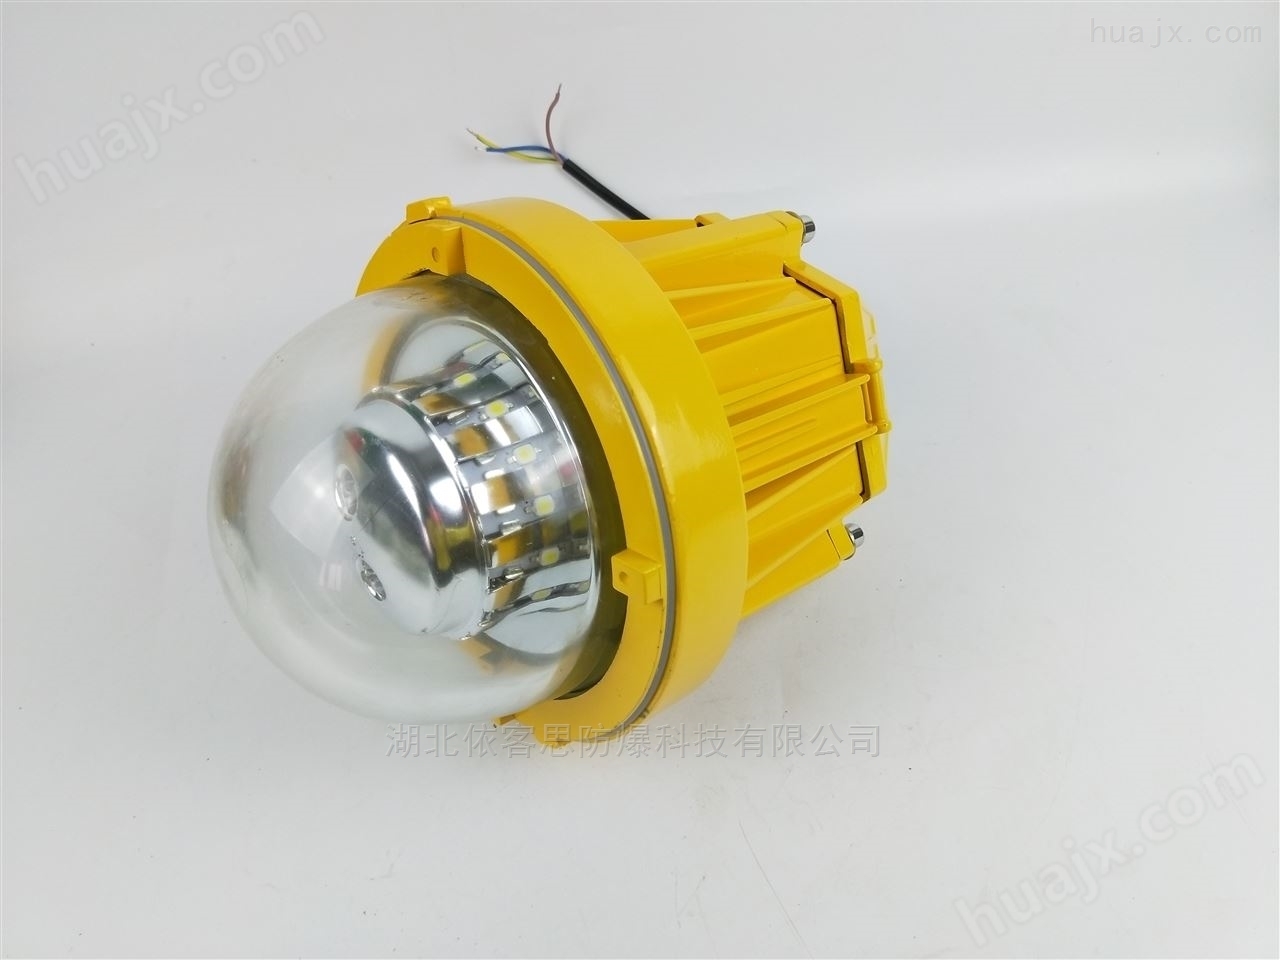 厂家批发BPC8765 LED防爆平台灯24W/36W/45W